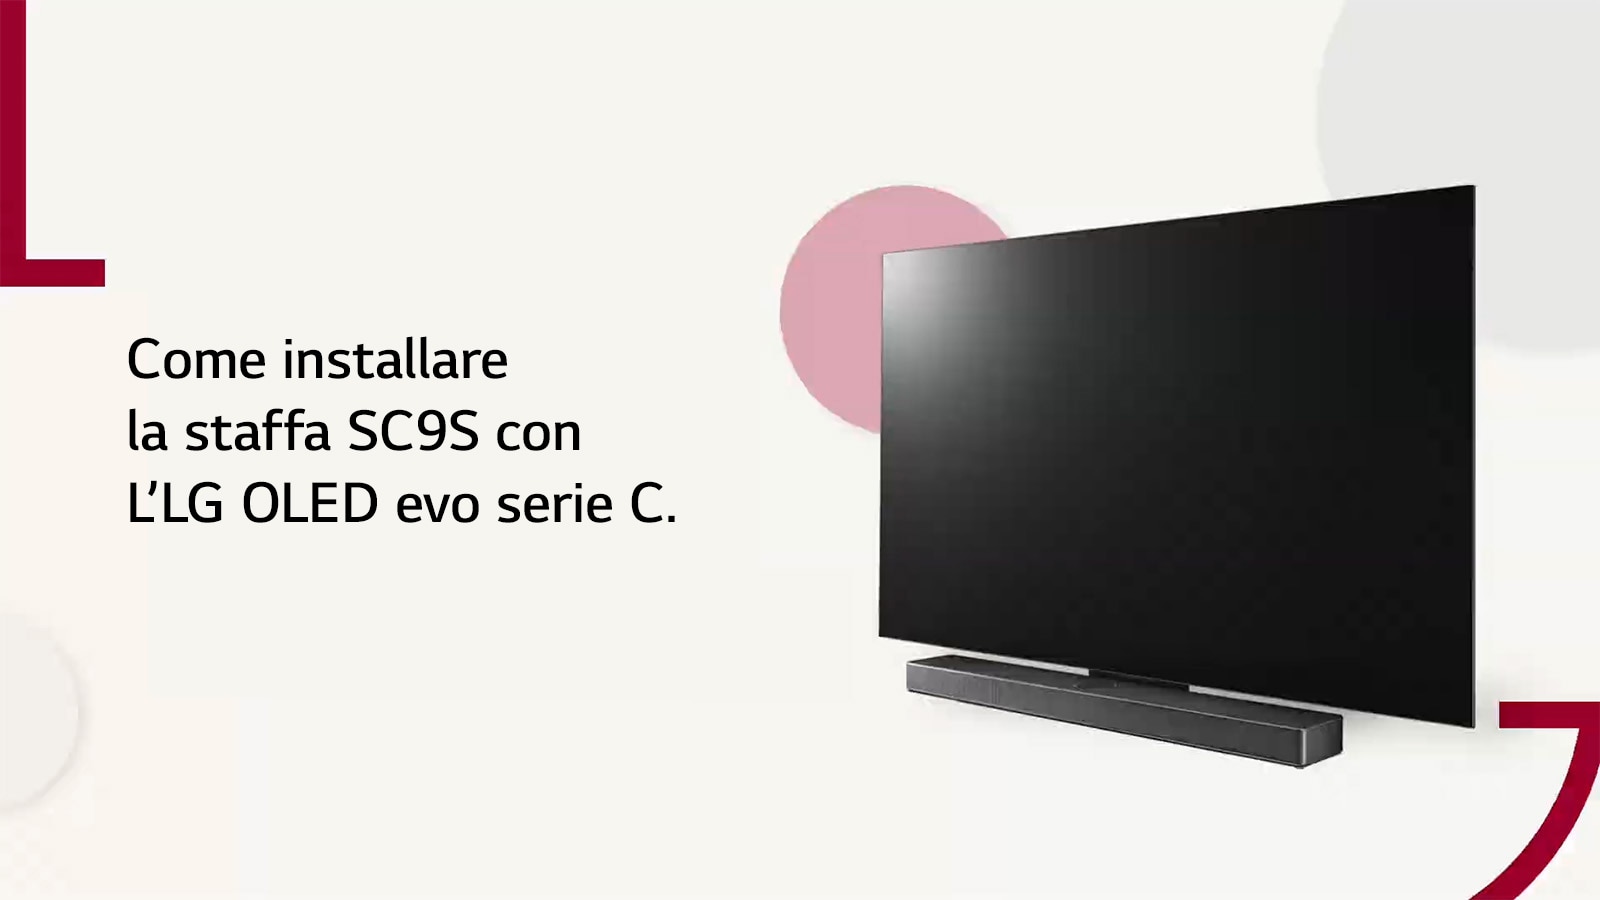 Un video che mostra come installare lo stand SC9S con i TV LG OLED della serie C2 e C3. Clicca per guardarlo.